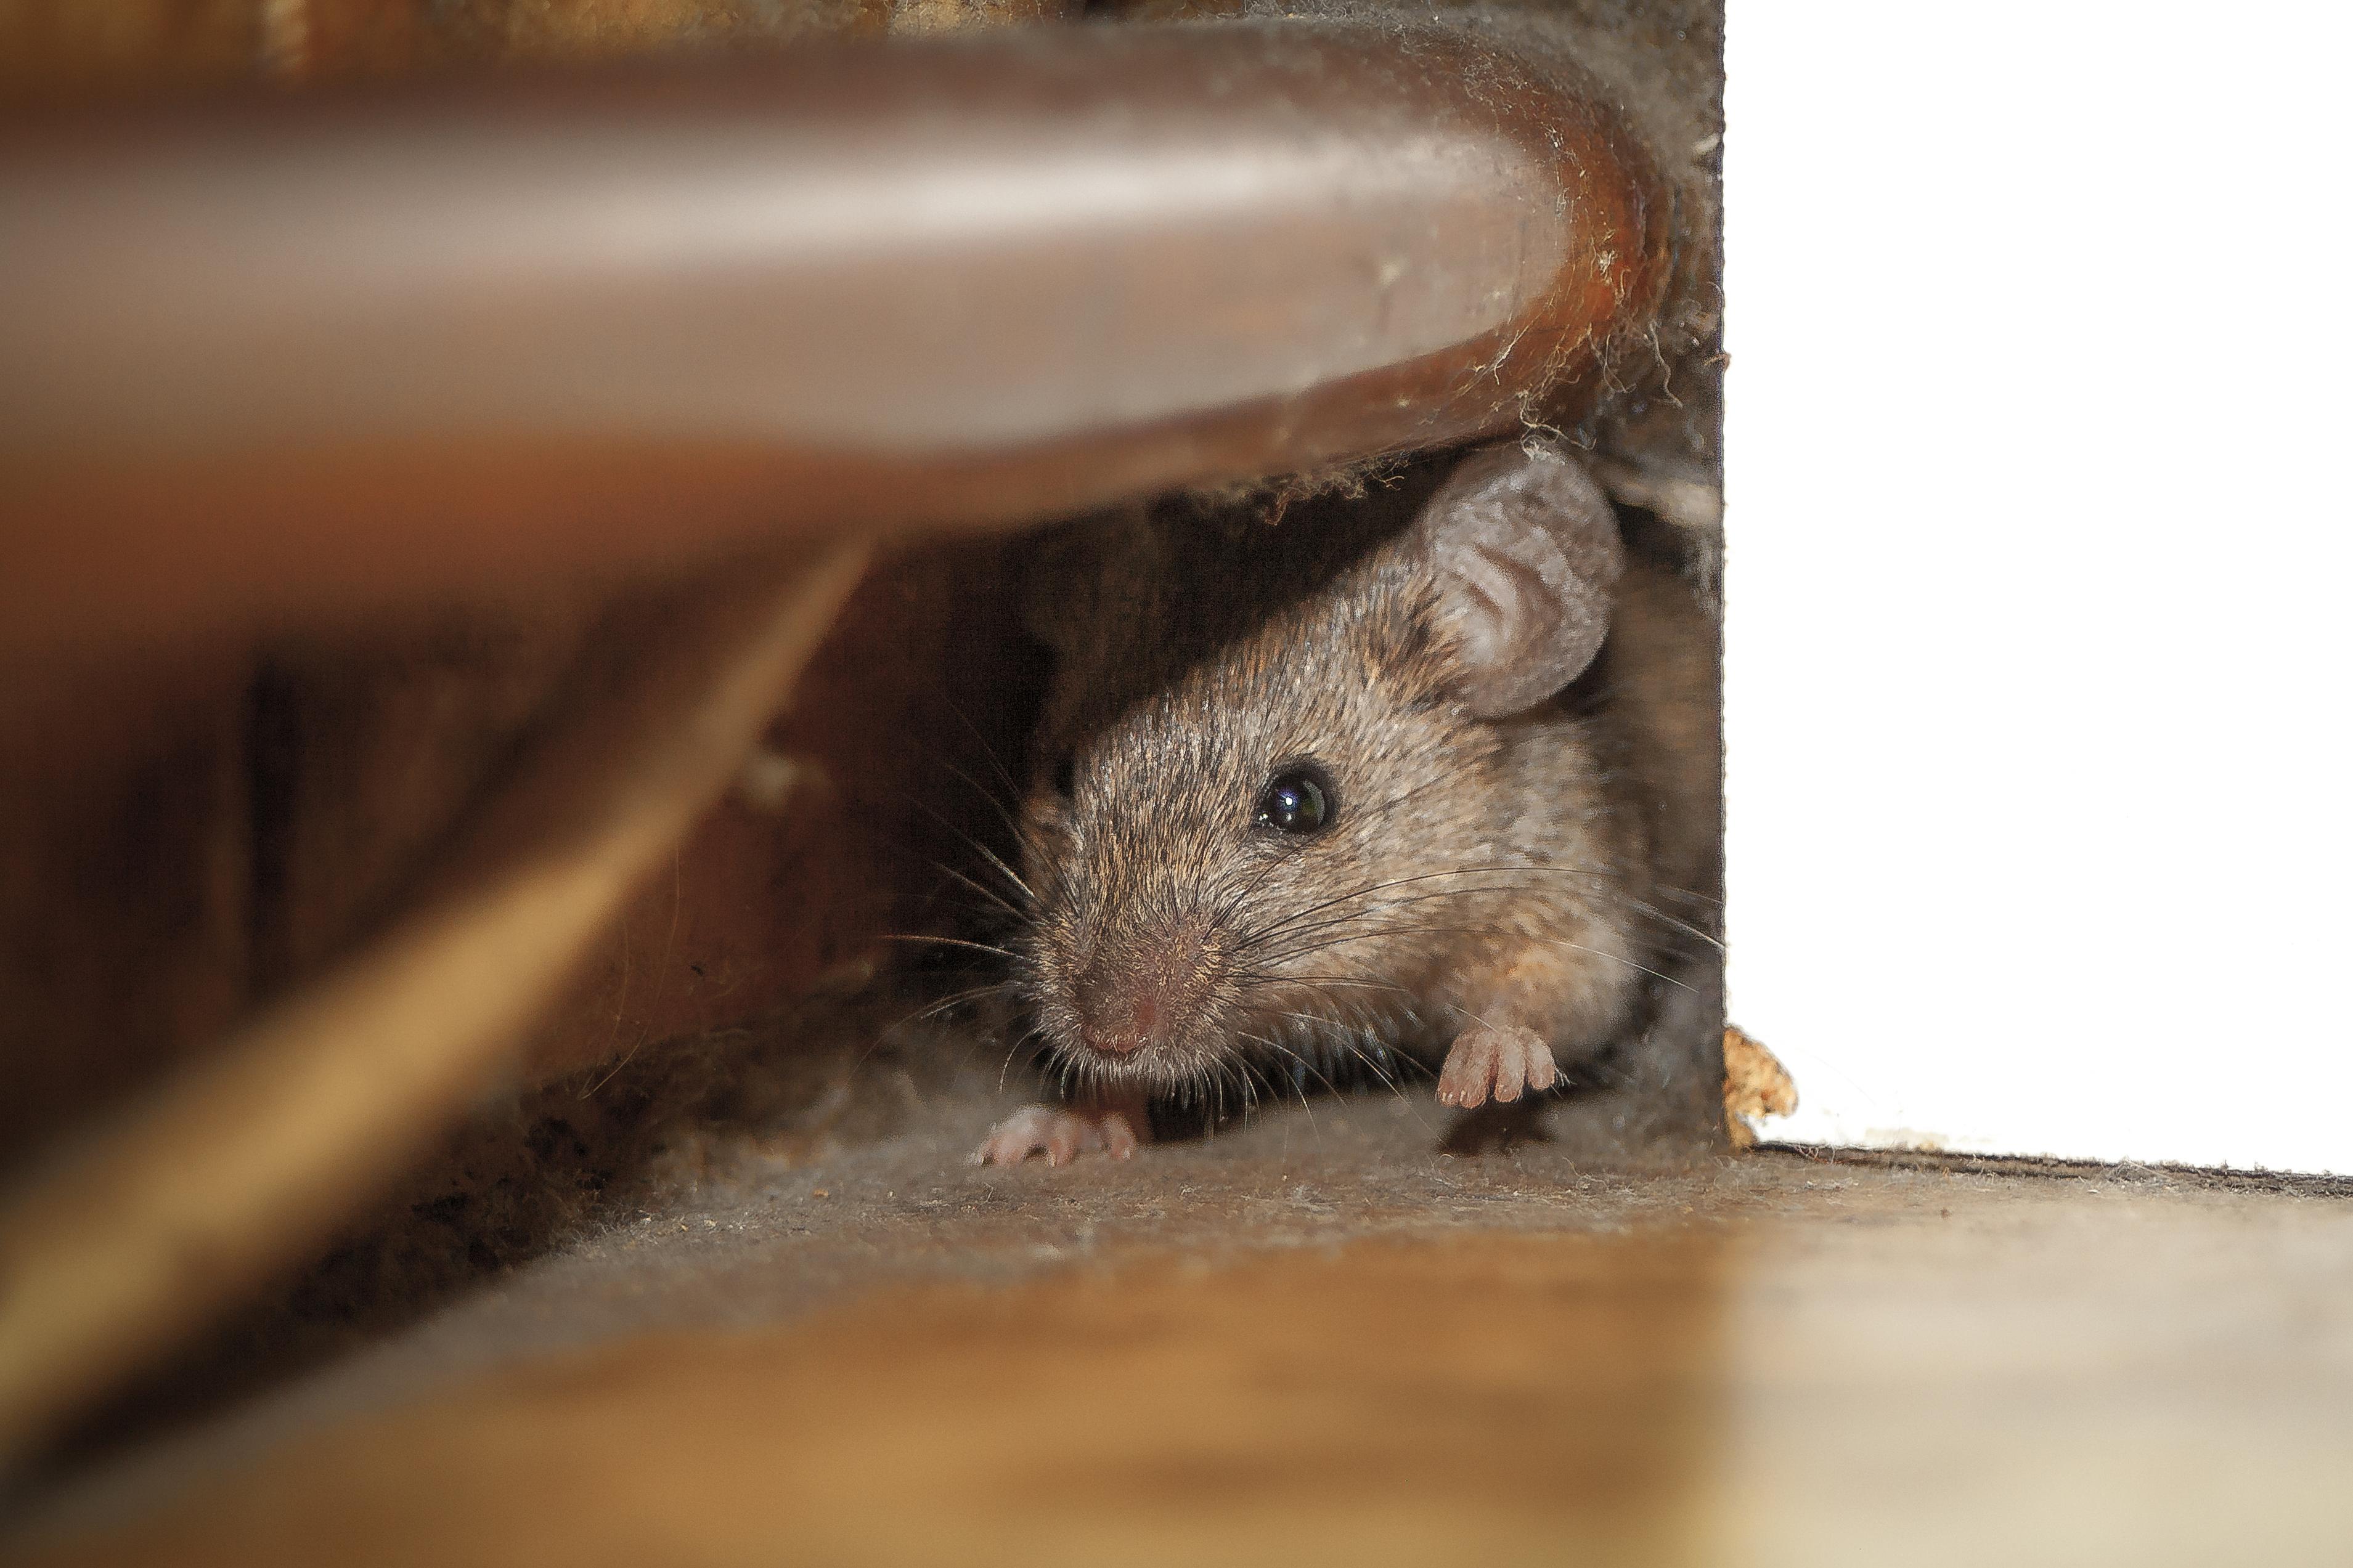  Da Mäuse nachtaktiv und scheu sind, bekommen wir sie nur selten zu sehen.